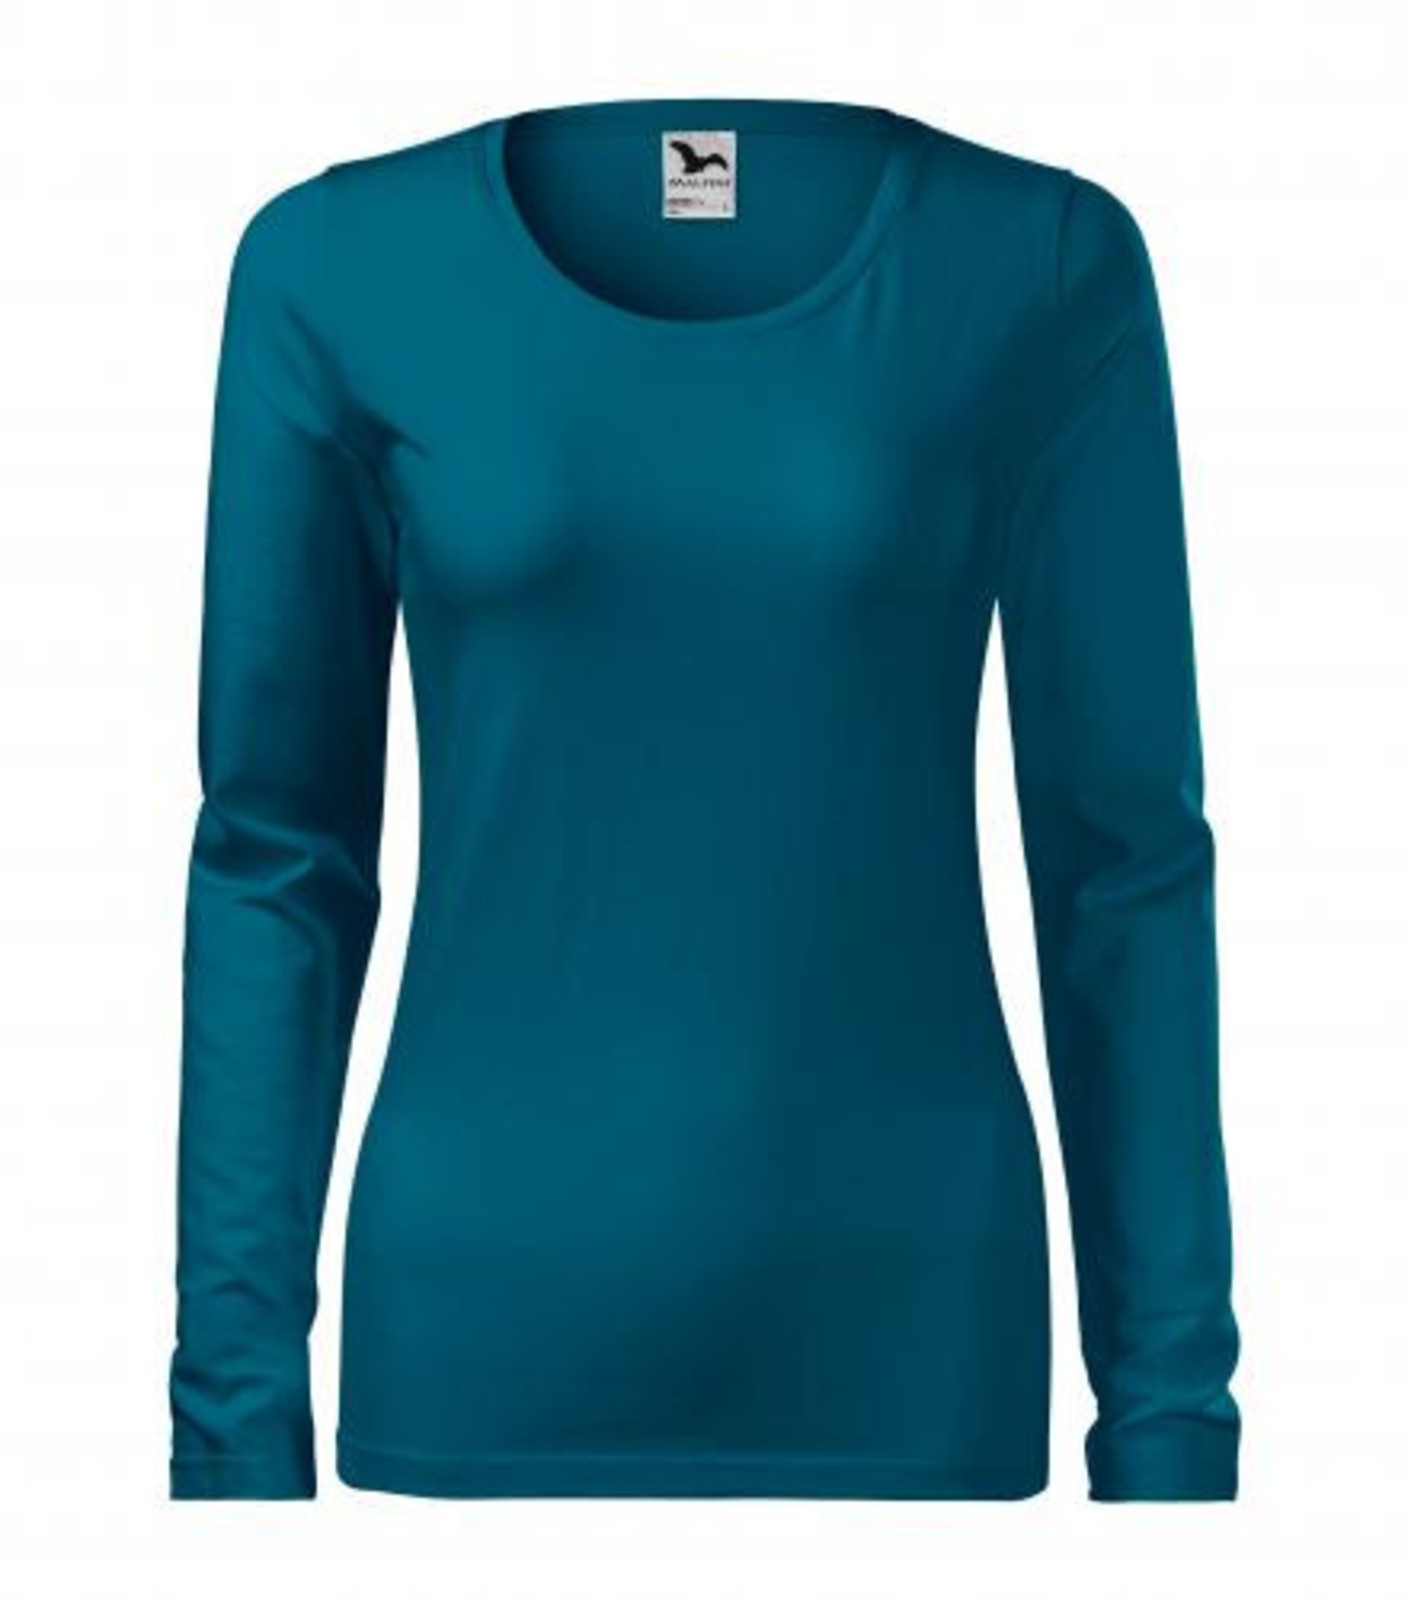 Dámske tričko s dlhým rukávom Adler Slim 139 - veľkosť: L, farba: petrolejová modrá